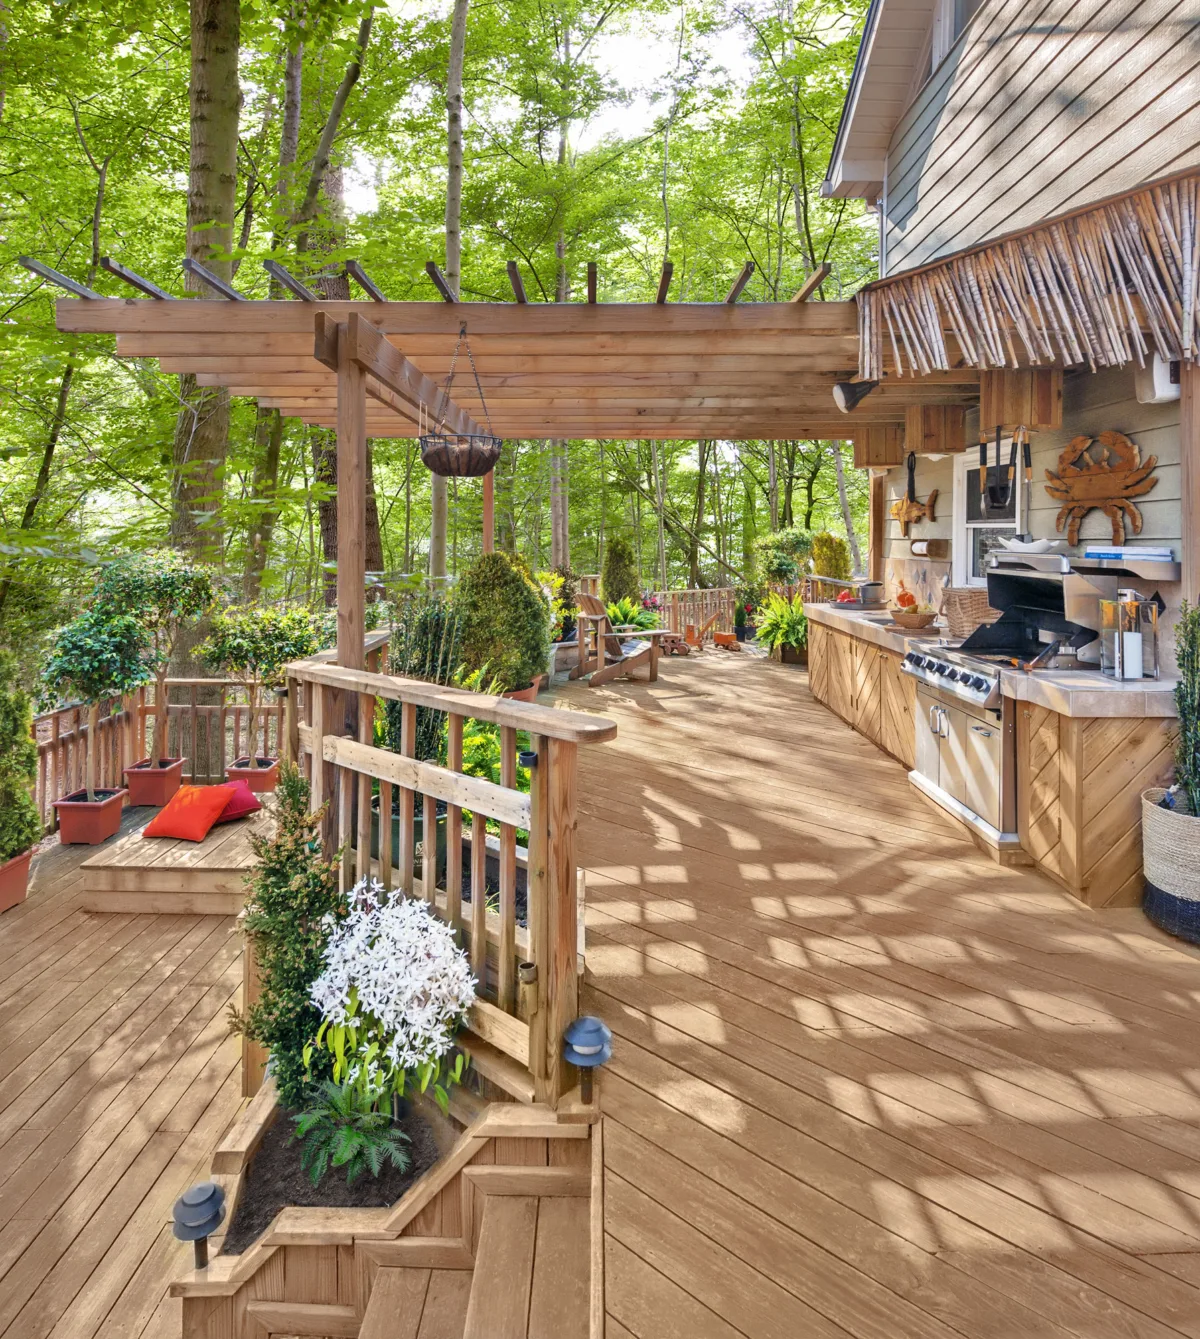 Terrasse en bois avec pergola dans un cadre forestier.